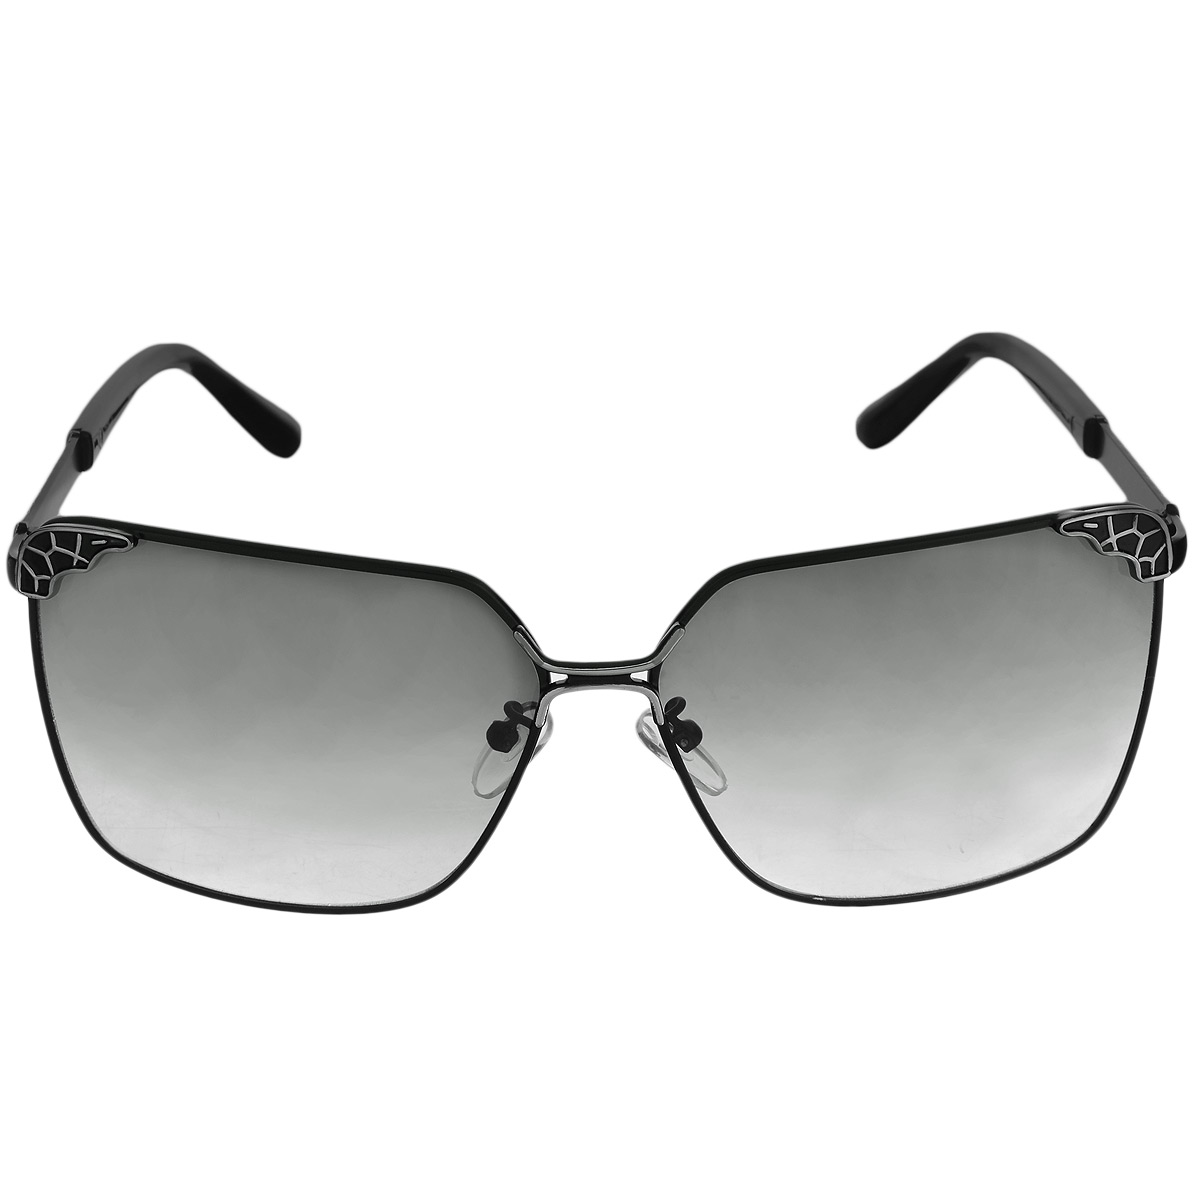 Солнцезащитные очки женские Selena, цвет: черный. 80031371